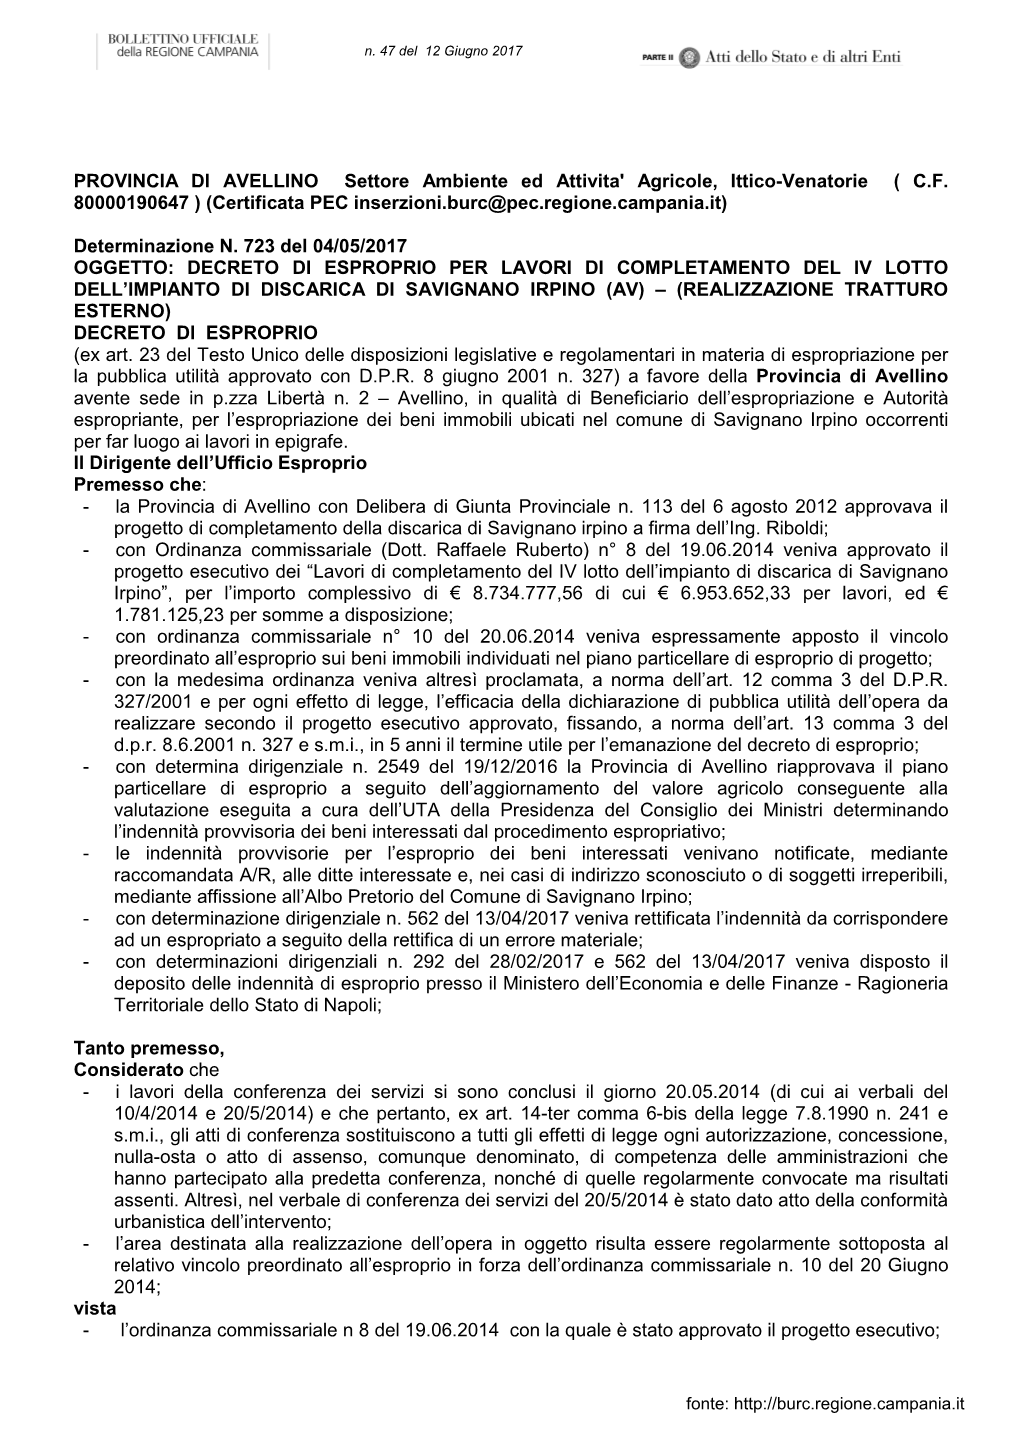 Provincia Di Avellino Determina N. 723 Del 04.05.2017